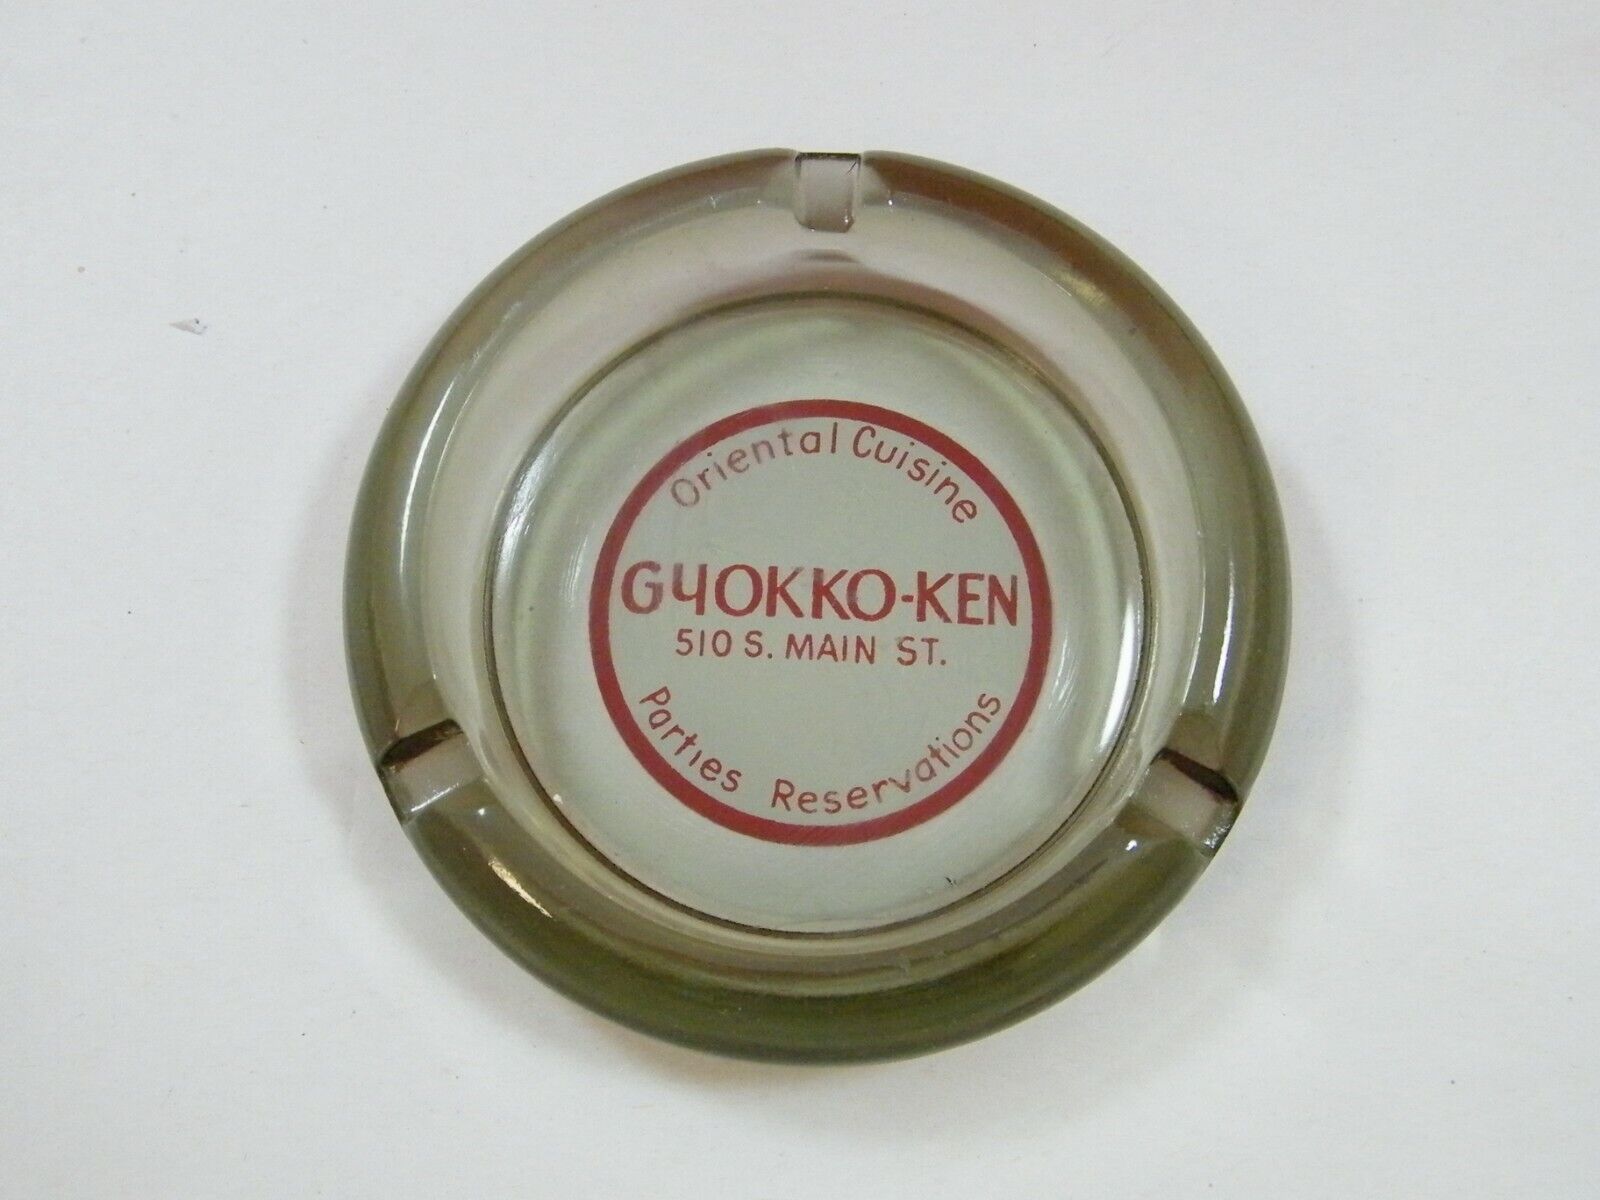 GYOKKO - KEN 510 S. MAIN ST SEATTLE CHINATOWN CANNERY UNION ASHTRAY